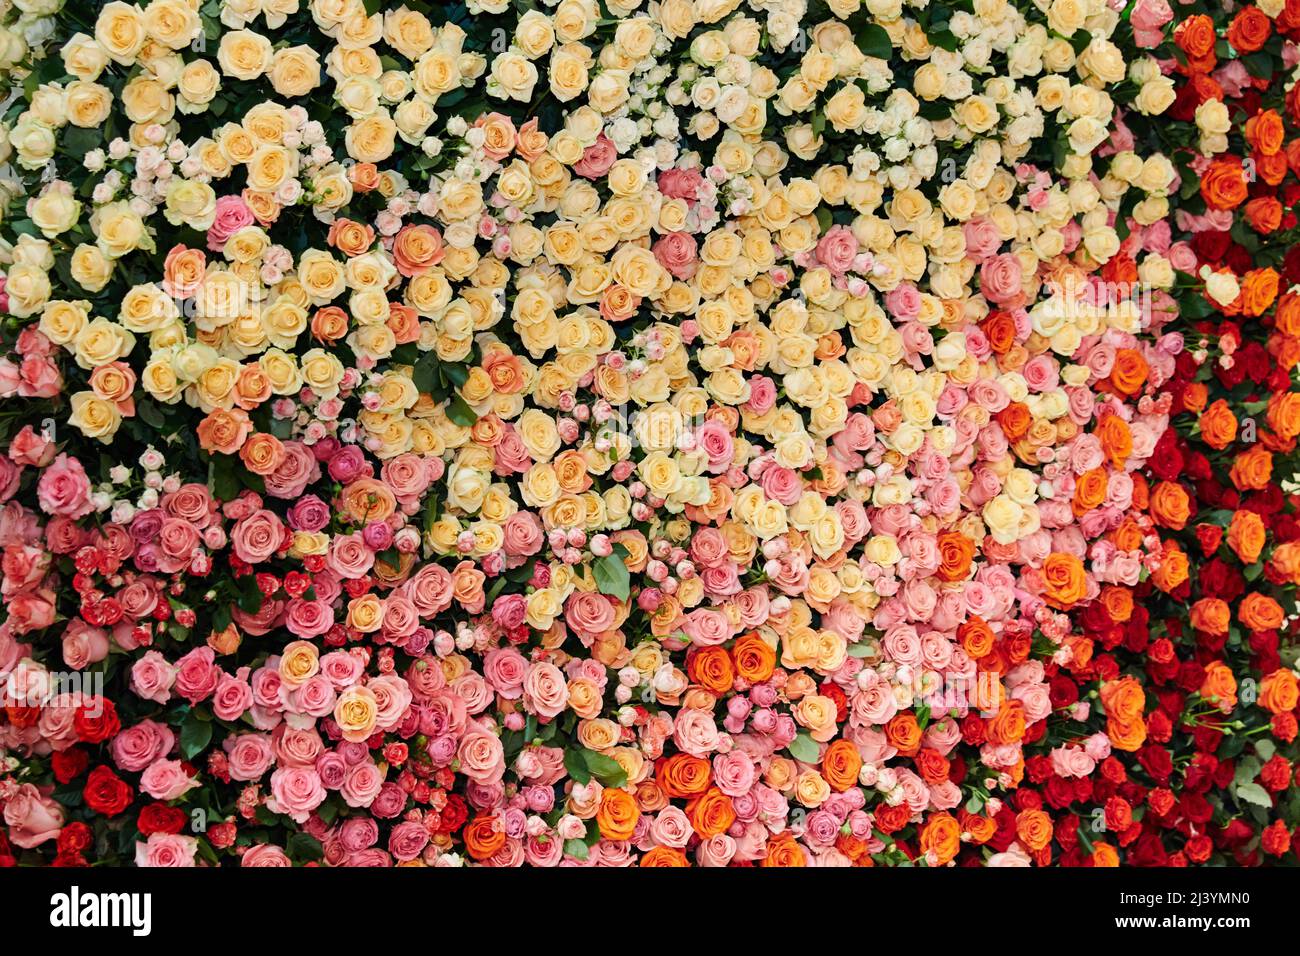 La Grande Muraille de roses de différentes couleurs et tailles, roses jaunes, rouge, blanc, rose, marron, orange, beige, arrière-plan, papier peint de bureau, volume Banque D'Images